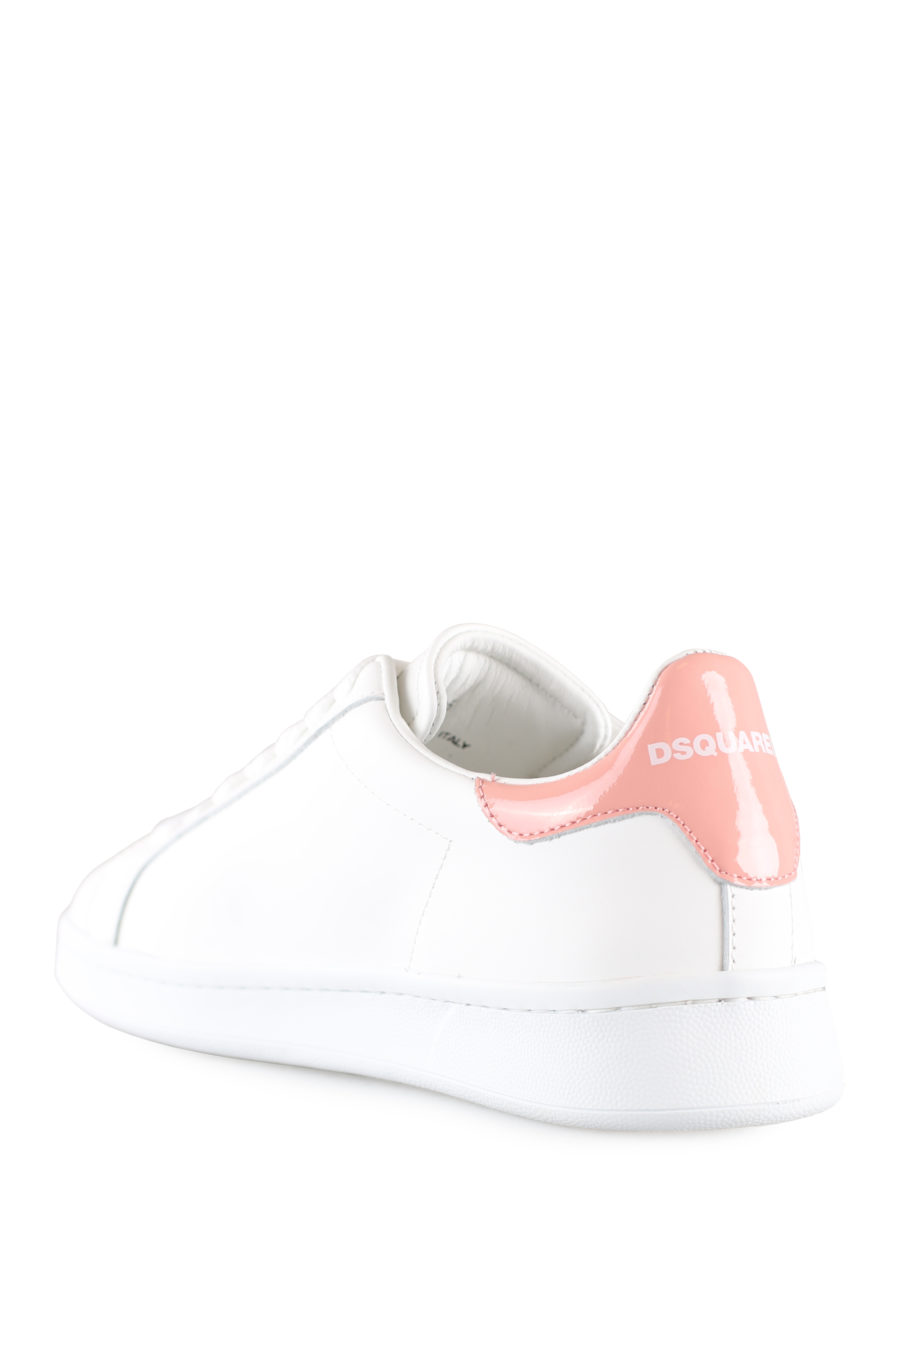 Zapatillas blancas con logo hoja rosa - IMG 0029